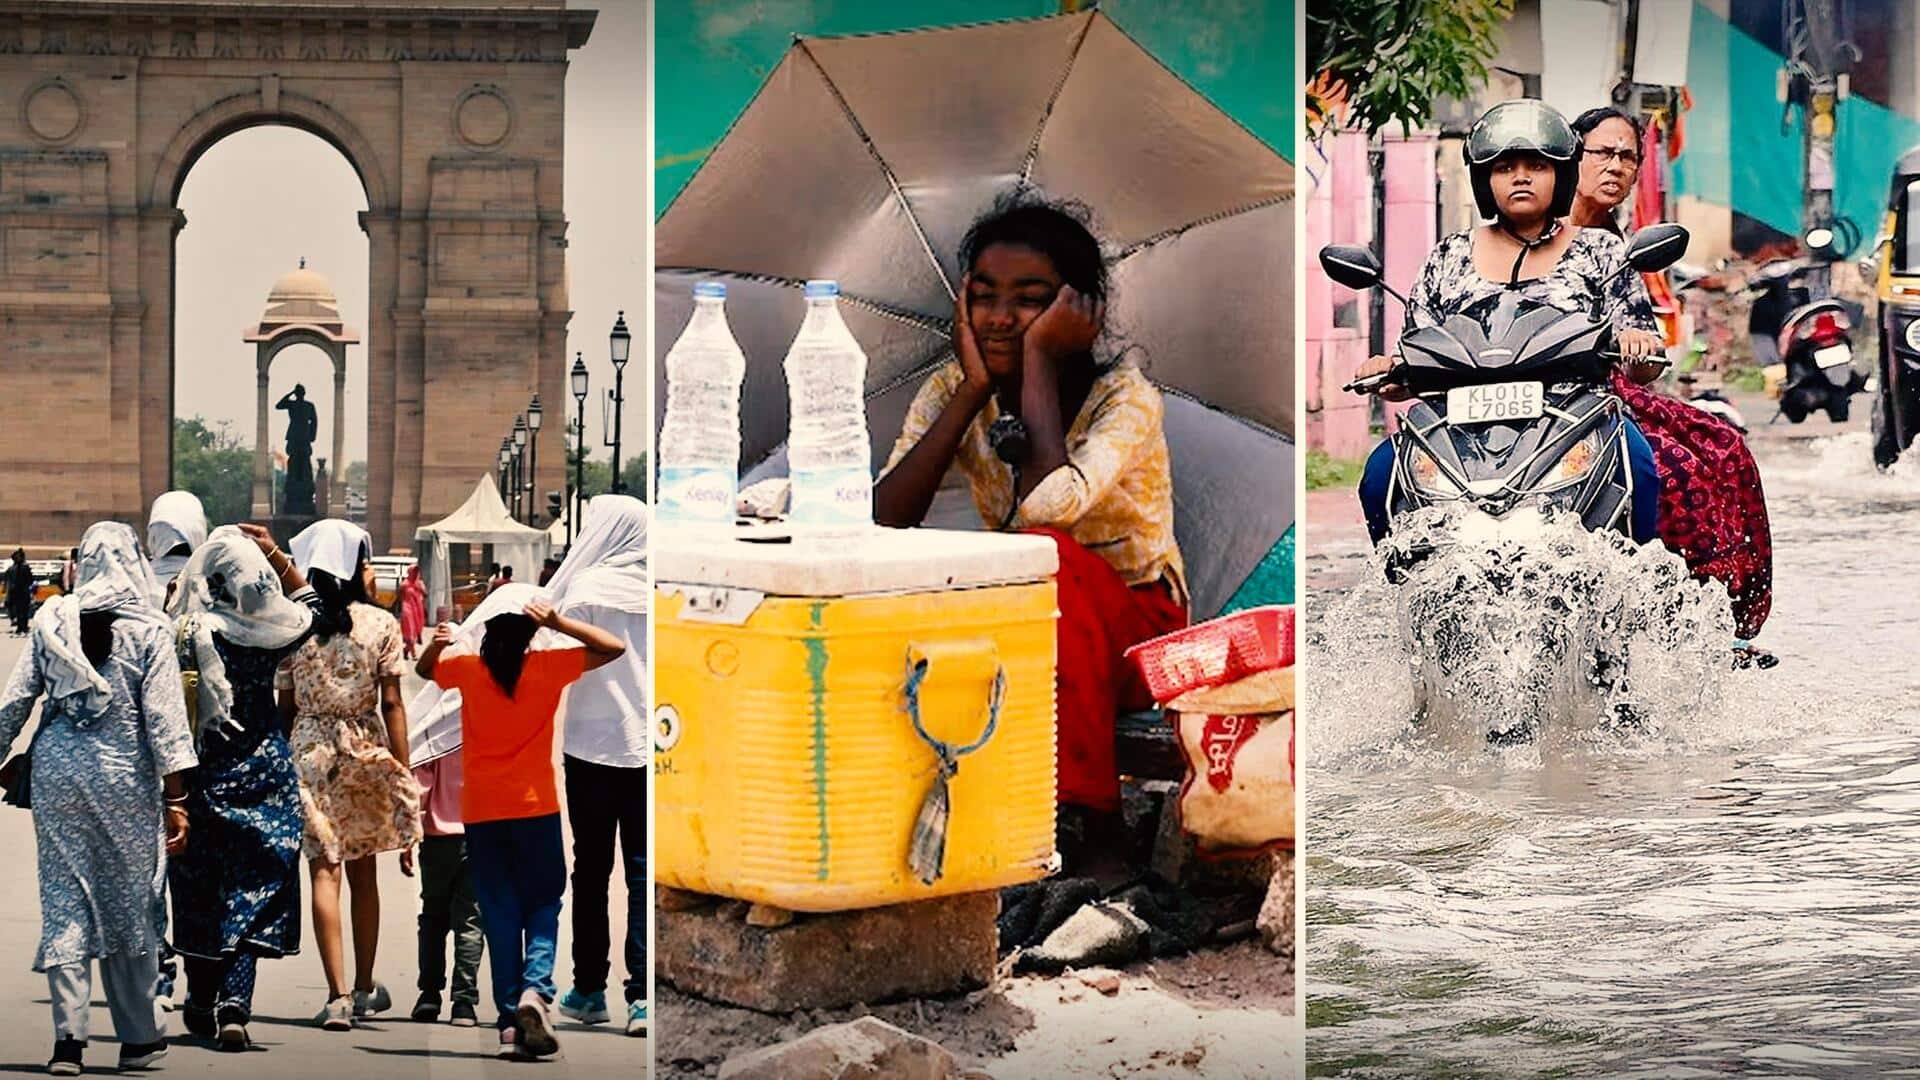 उत्तर भारत में भीषण गर्मी से लोग परेशान, केरल में बारिश से 4 की मौत